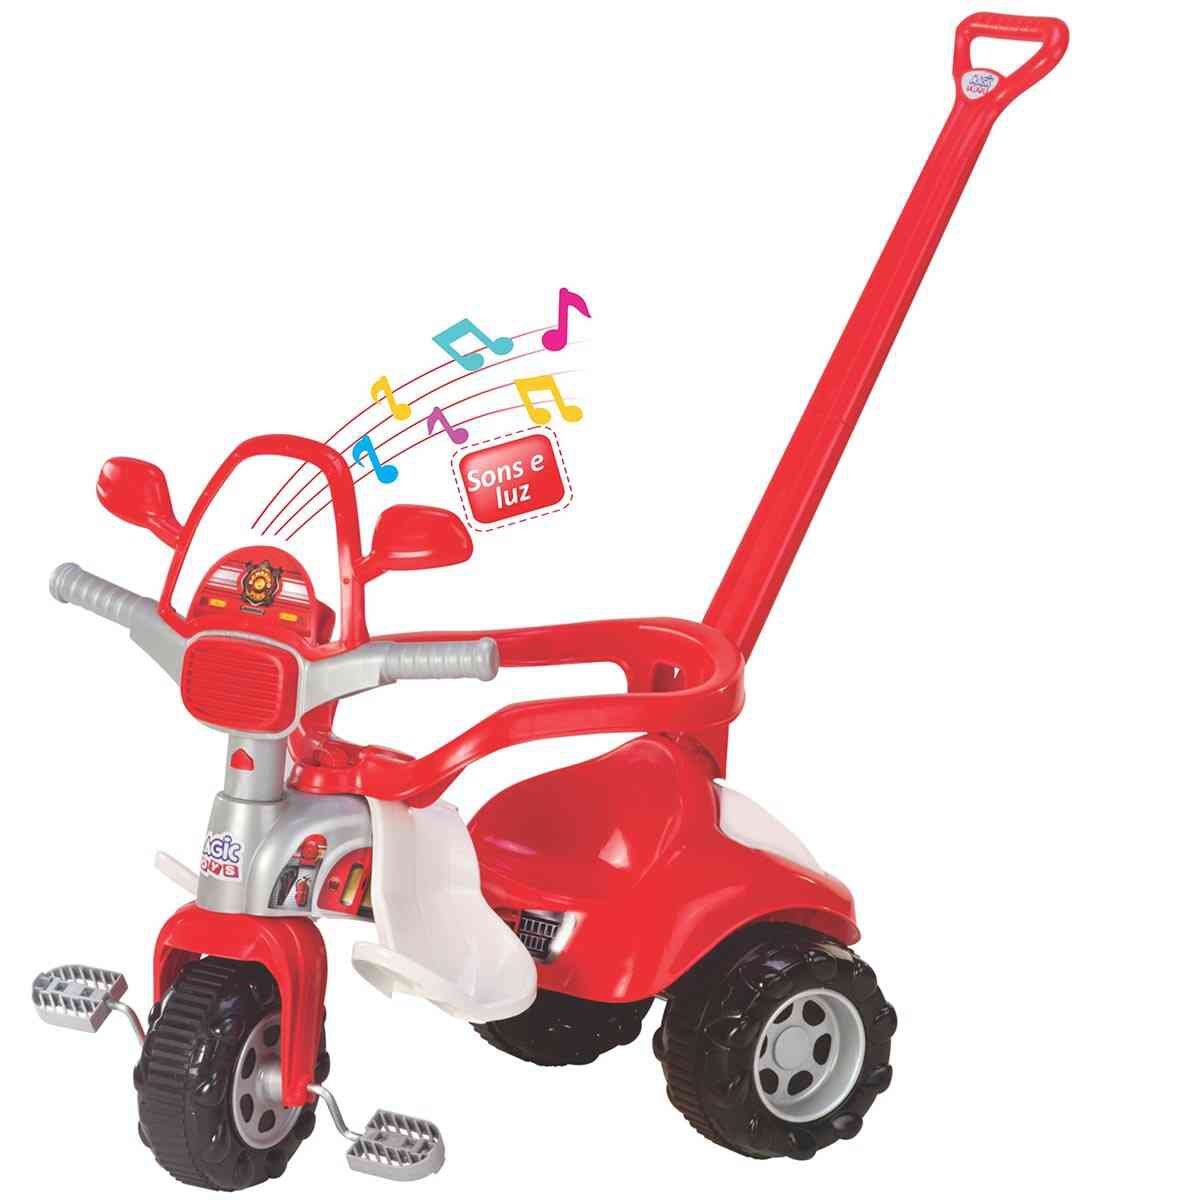 Triciclo Infantil Motoca Tico Tico Doutora Pet - Magic Toys 2720